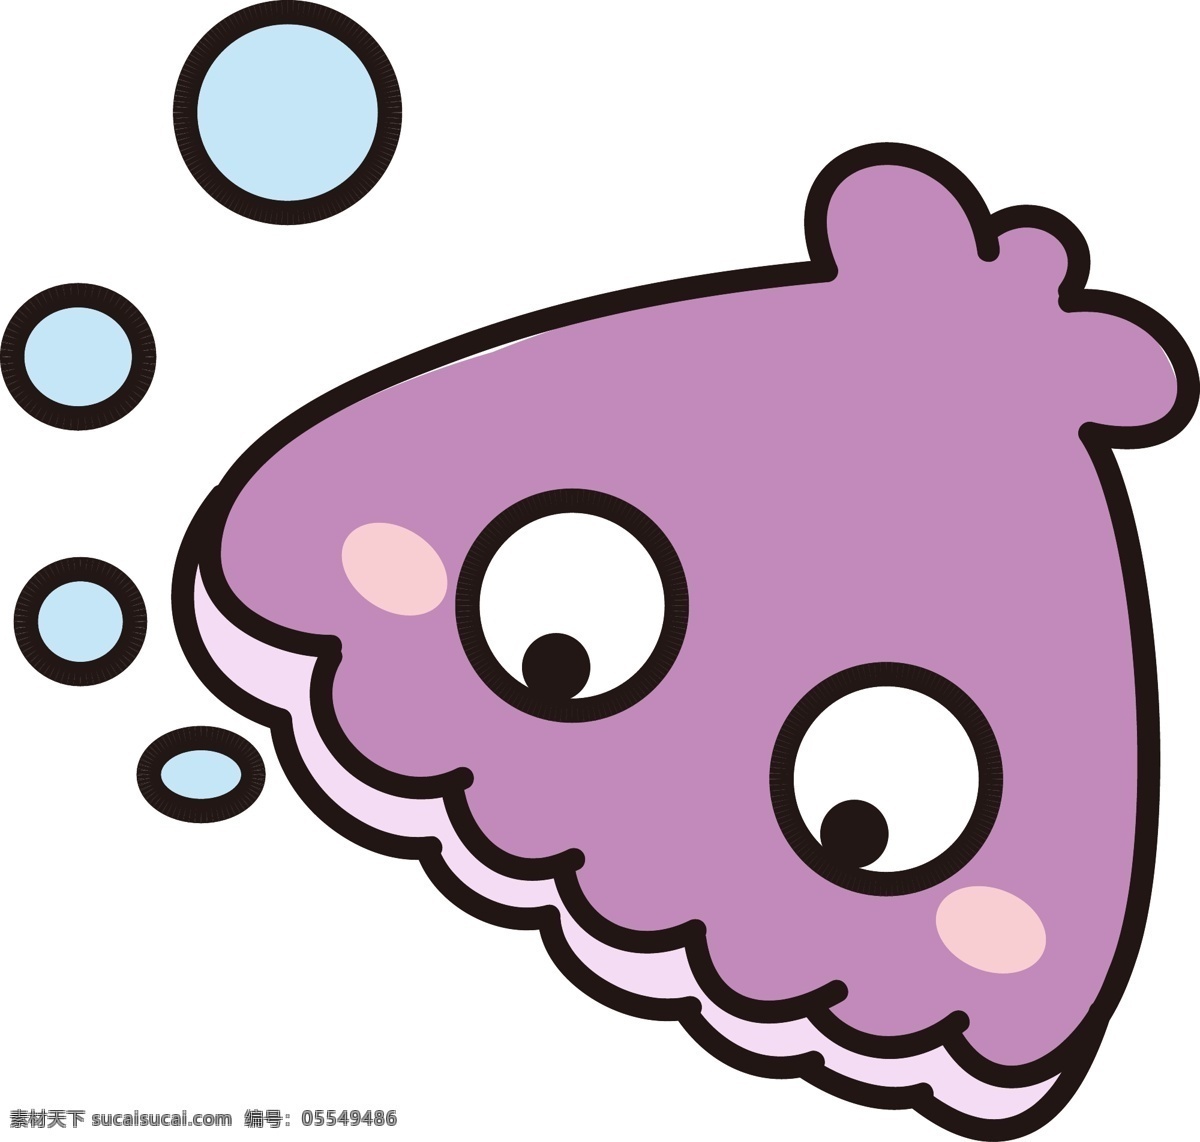 矢量 手绘 卡通 紫色 小鱼 大眼睛 水泡 大海 章鱼 海鱼 可爱 免扣 小动物 水里动物